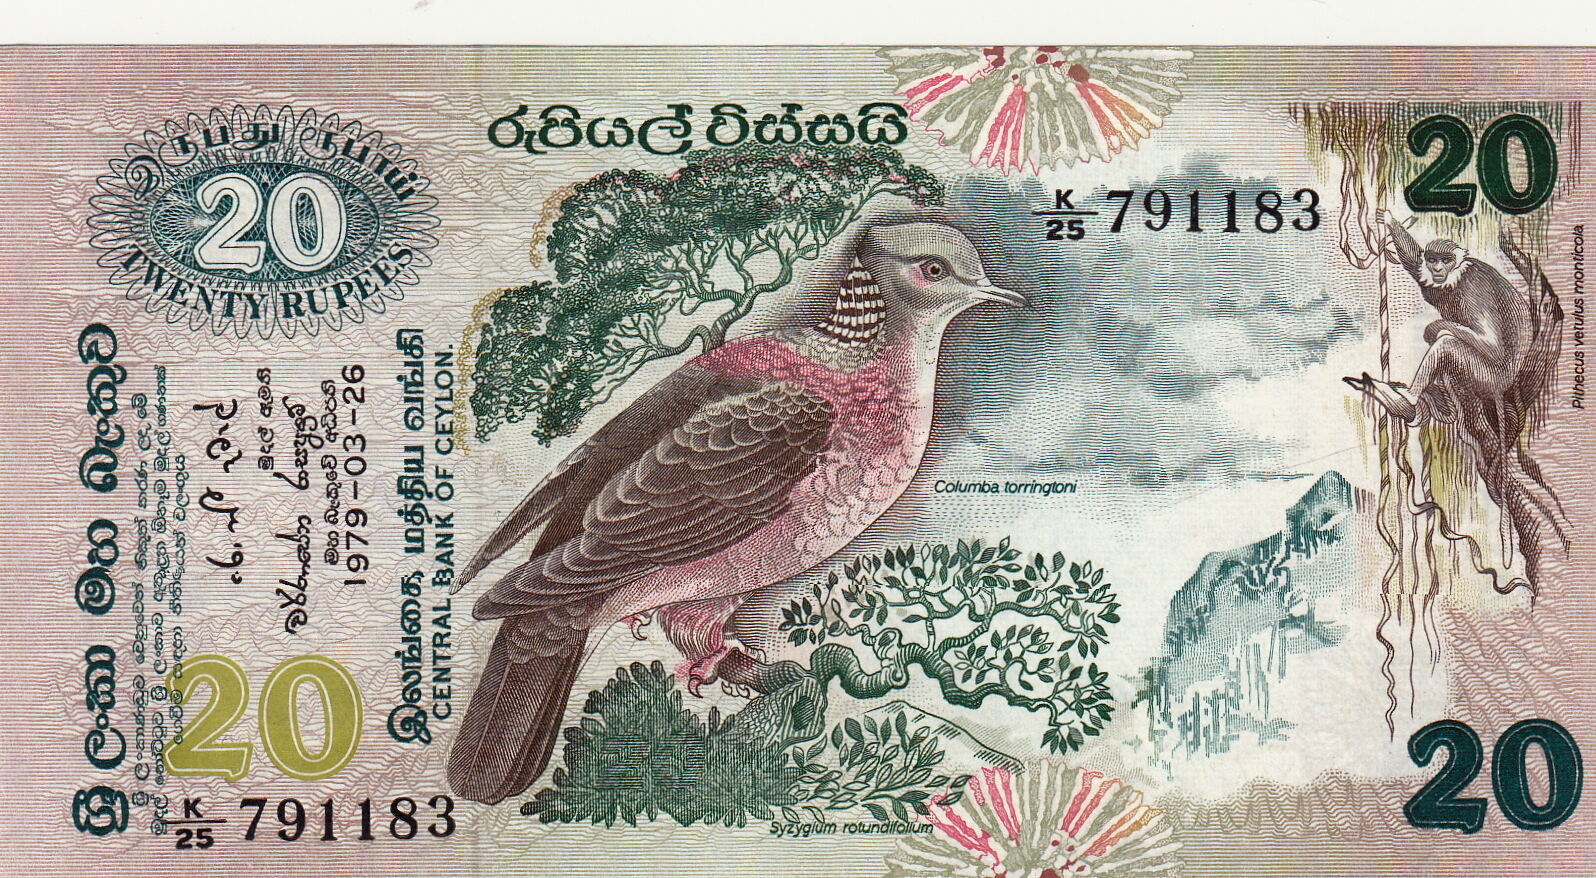 Купюры мм. Банкнота Шри Ланка 20 рупий. Купюра rupees twenty. Пернатые на банкнотах. Шри Ланка 20 рупий 2015.